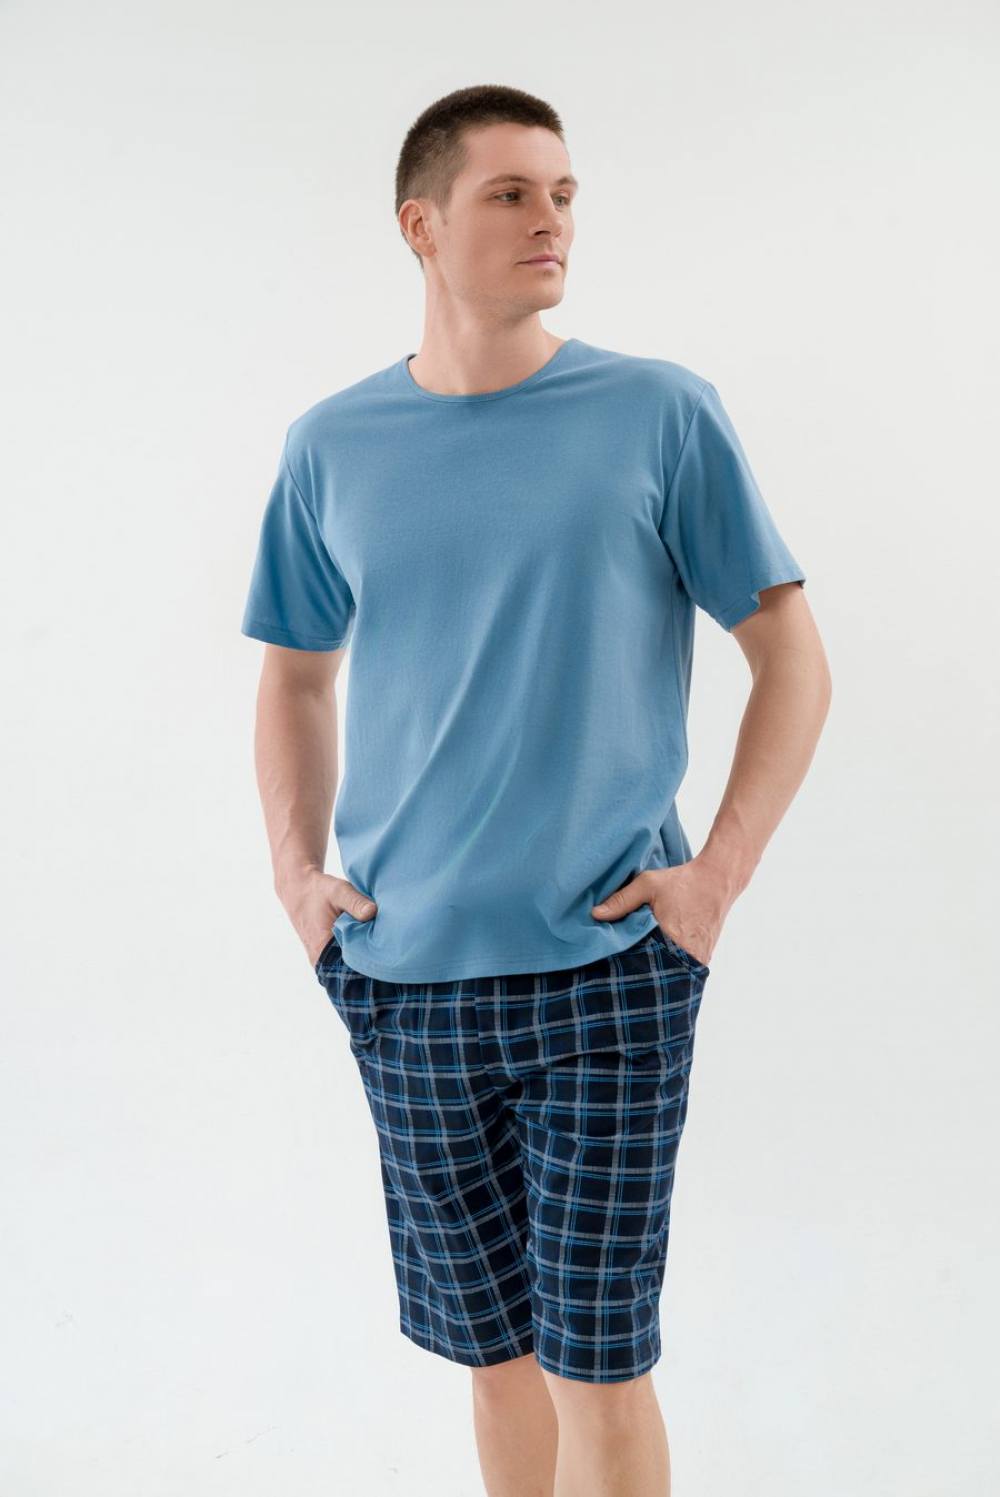 Пижама мужская с шортами. Артикул 000005433